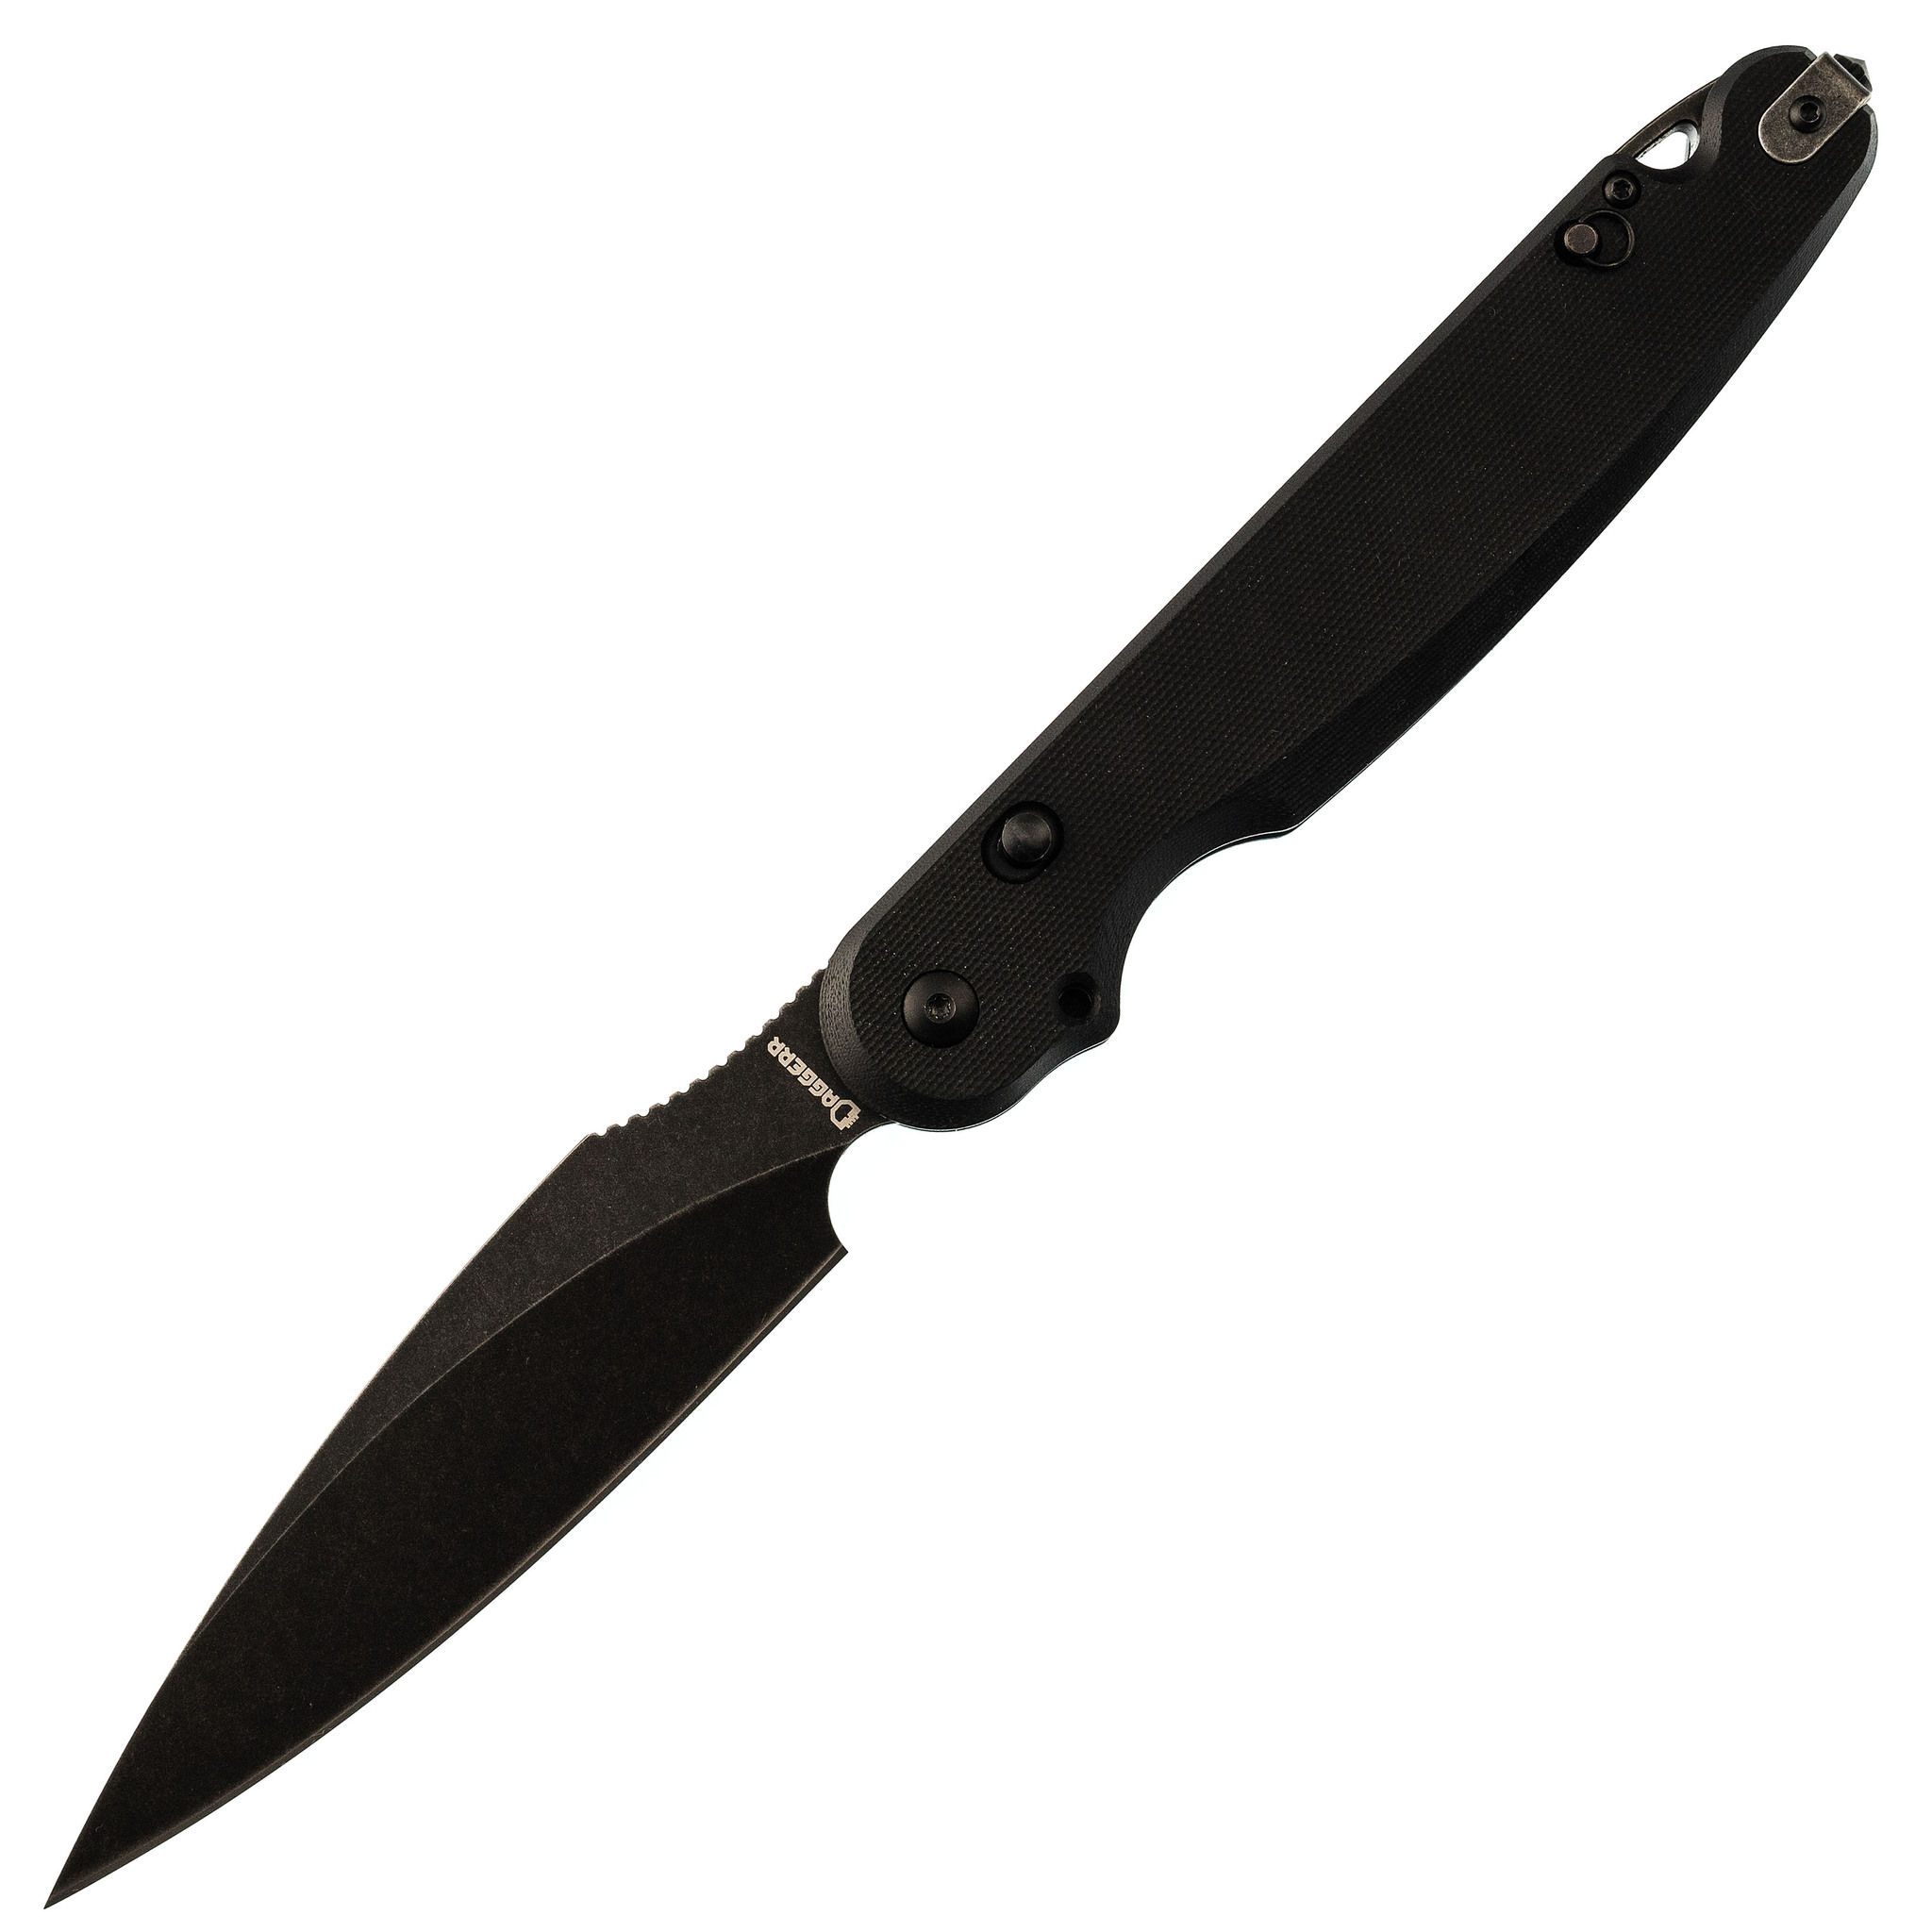 Складной нож  Dagger Parrot 3.0  All Black, G10 складной нож boker icepick dagger сталь vg 10 рукоять carbon fiber